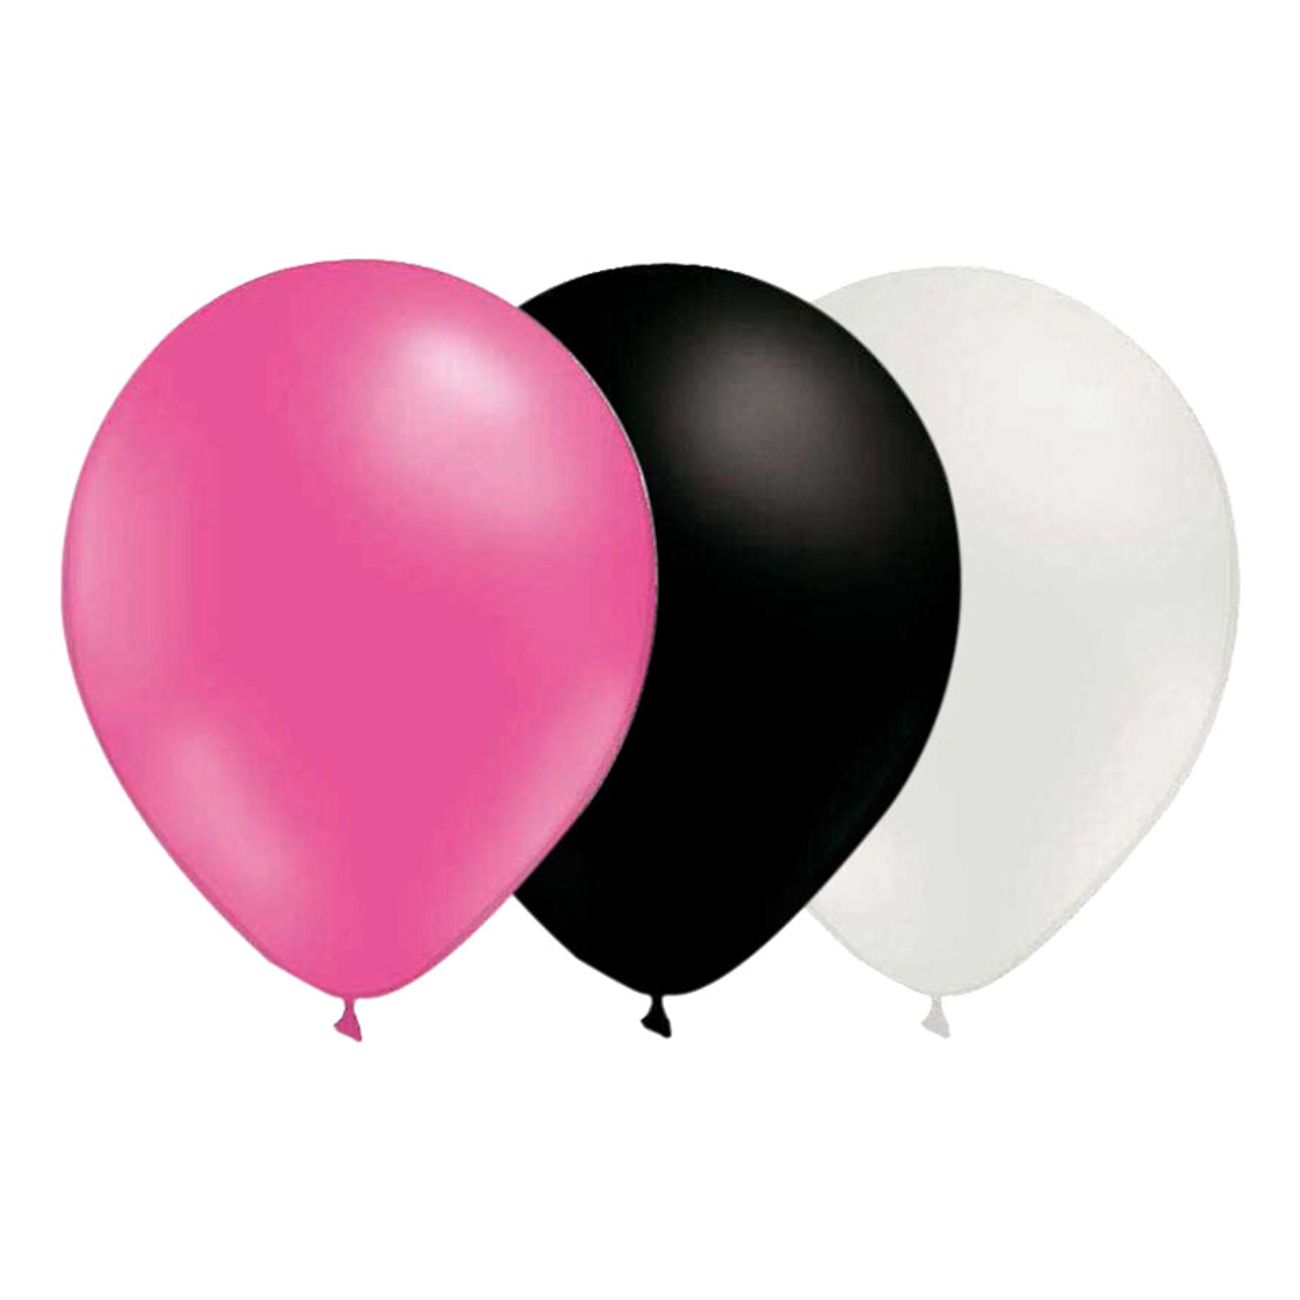 ballongkombo-rosa-svart-vit-1